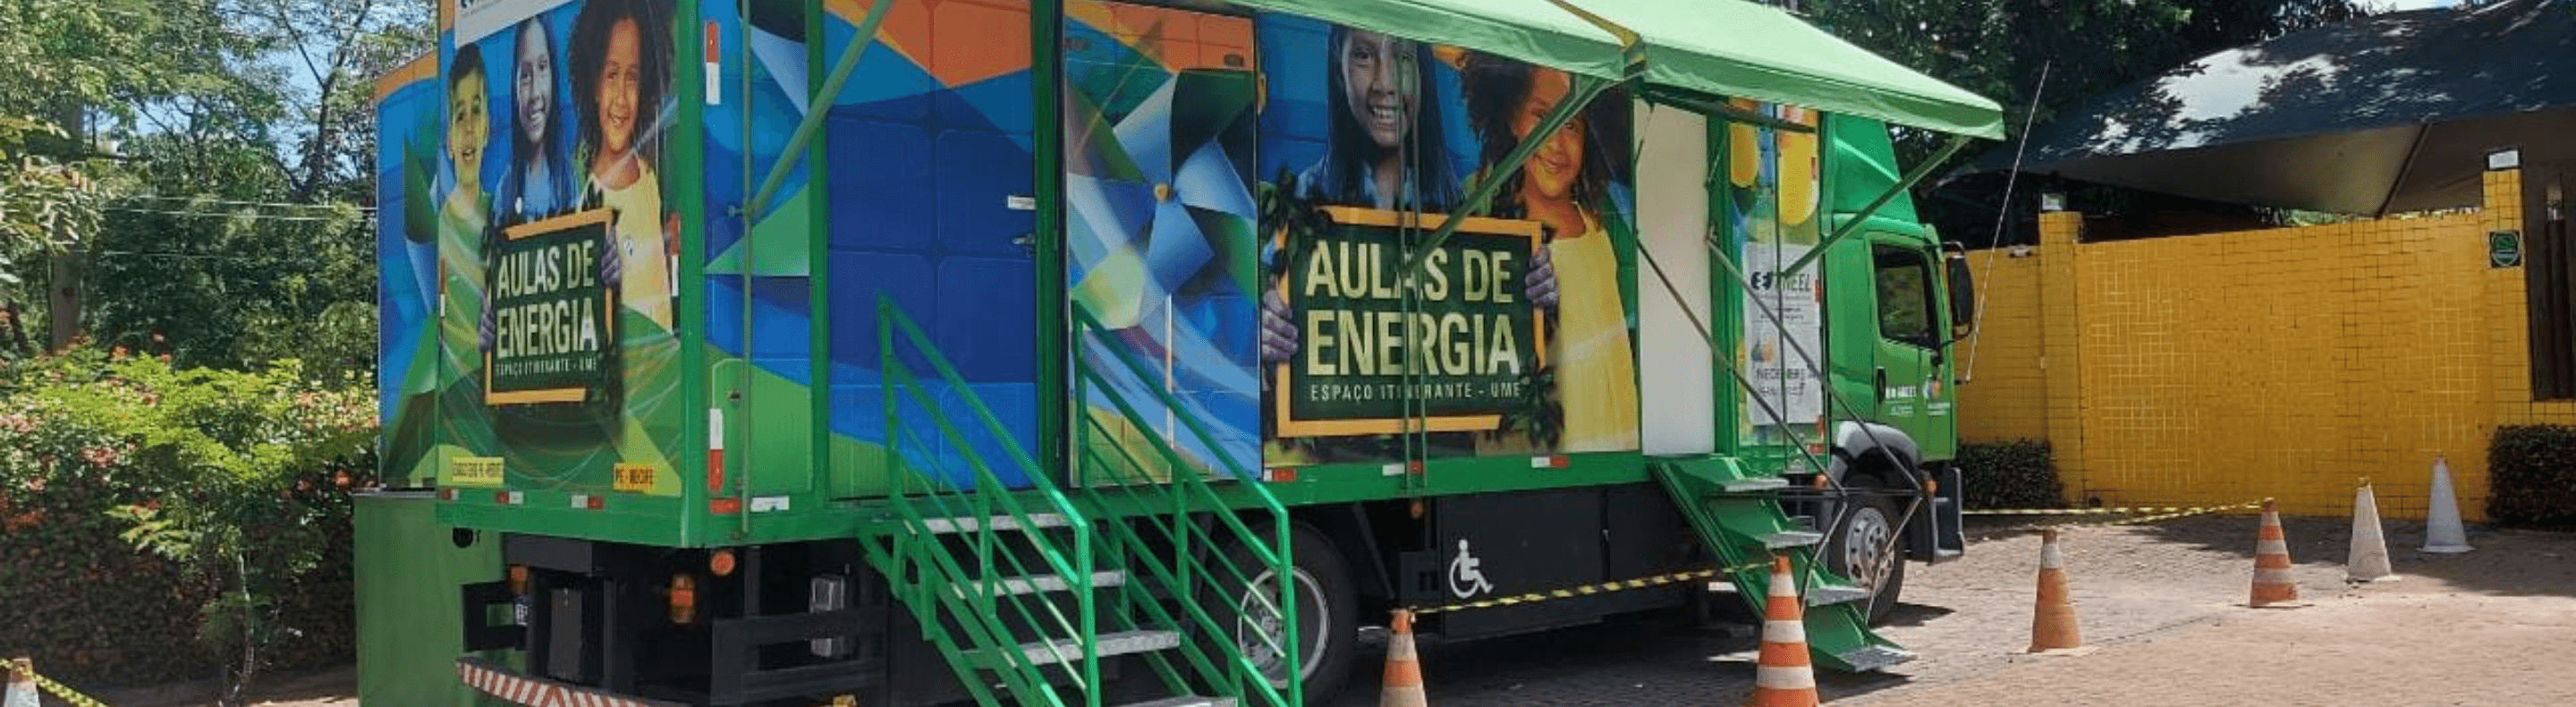 Caminhão do Projeto Aulas de Energia da Neoenergia Pernambuco estacionado para atendimento